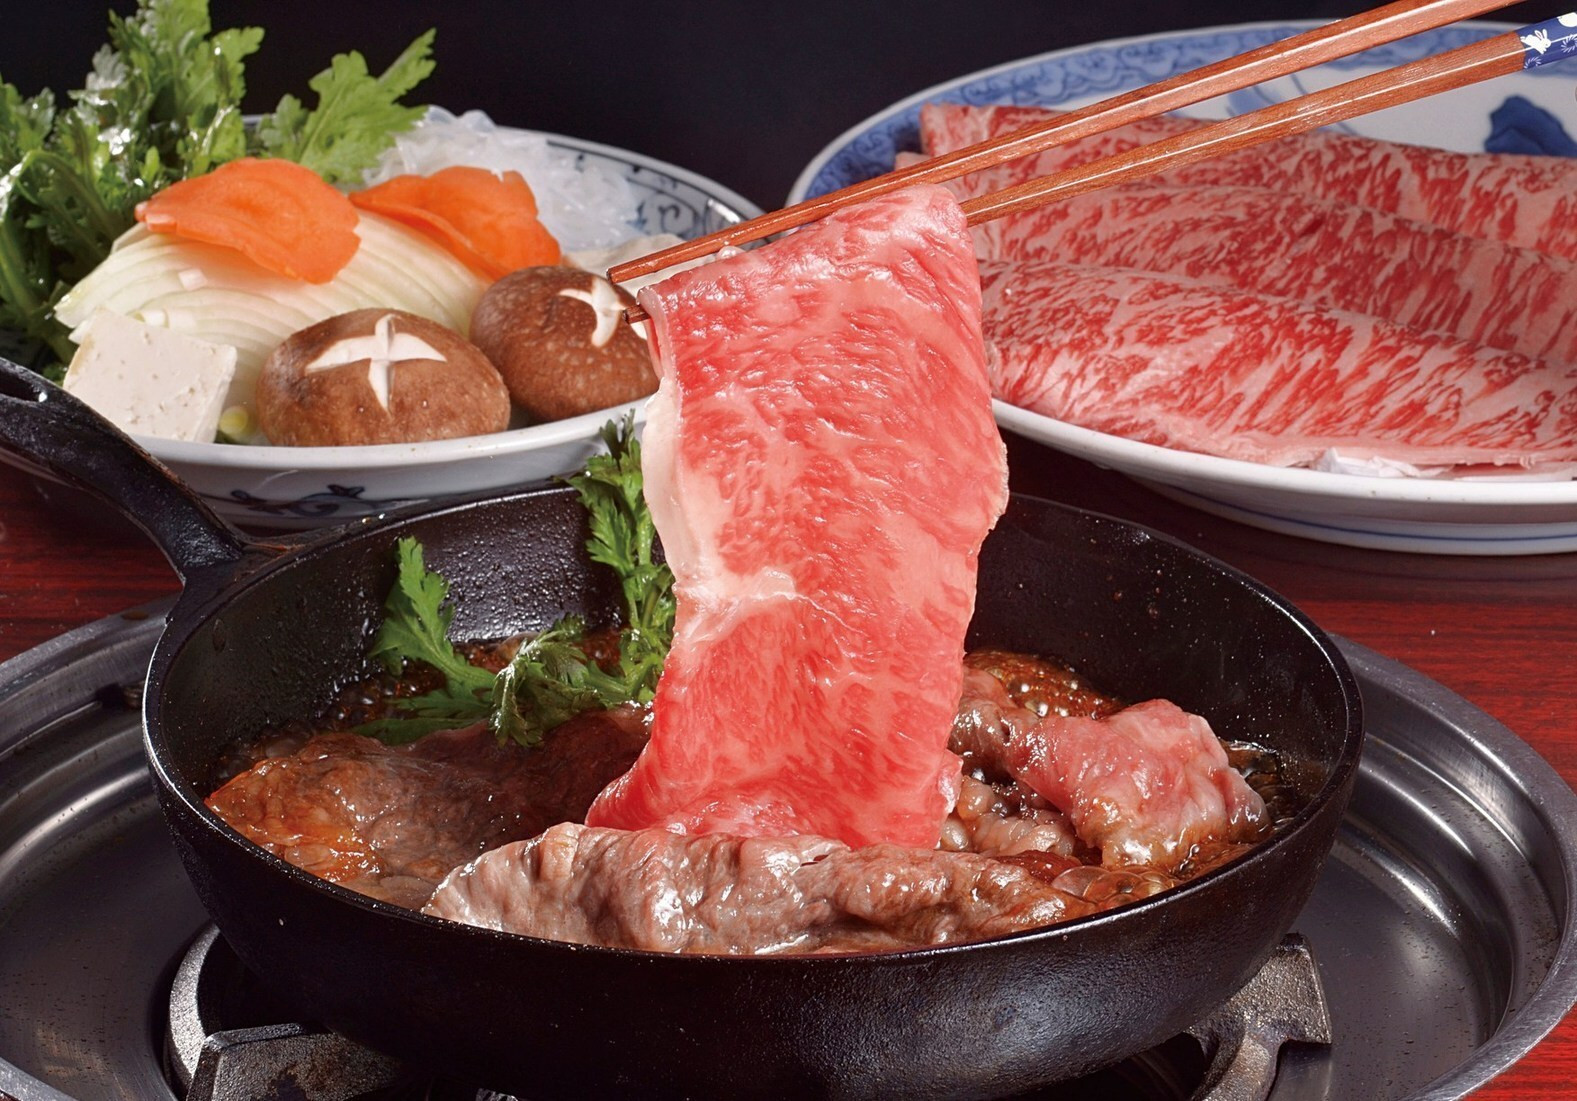 三重 松阪で 松阪牛 を食べよう おすすめランチ店10選 Icotto イコット